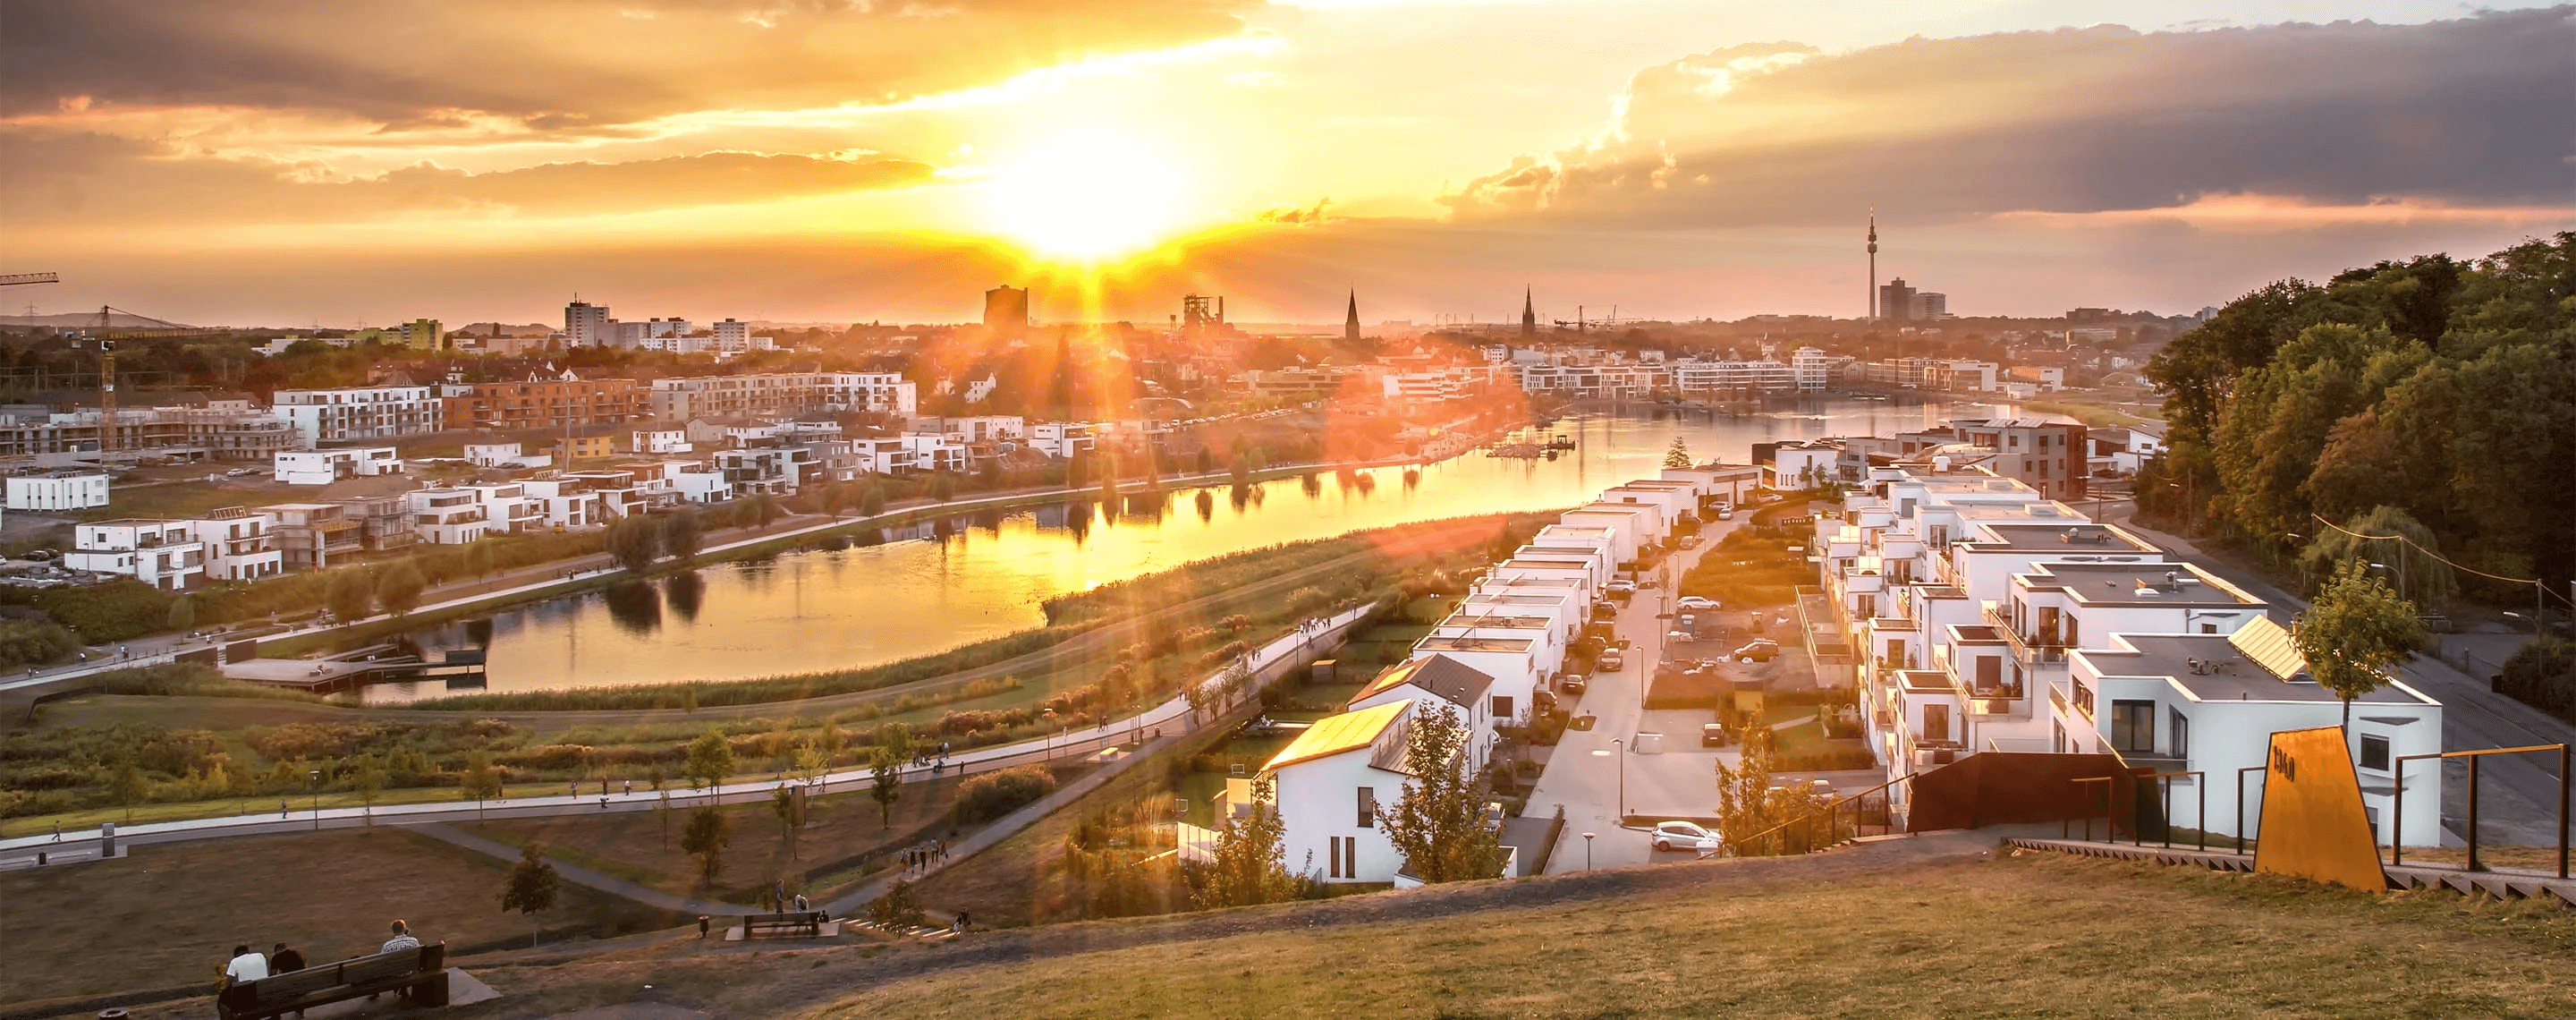 Panorama von Dortmund bei Sonnenuntergang